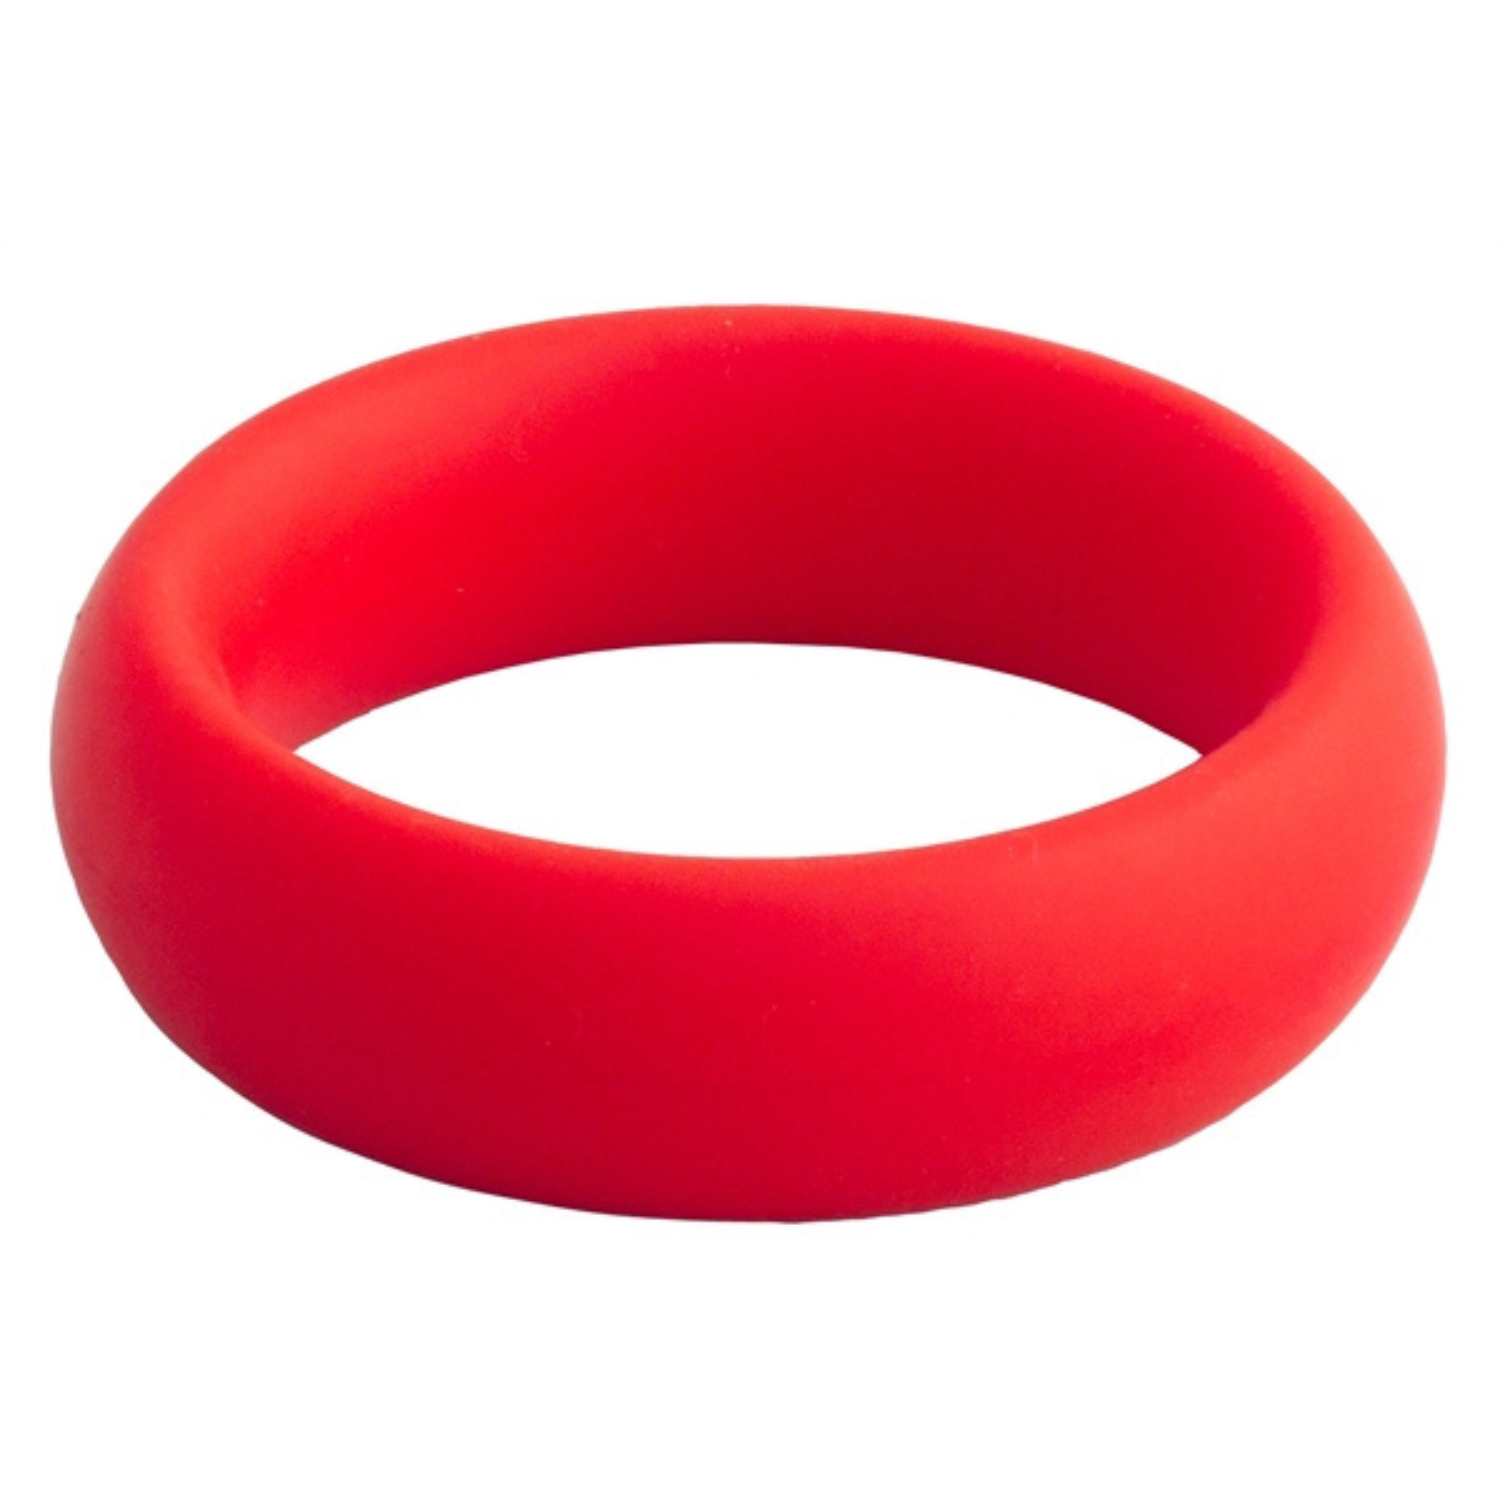 Rode donut cock ring met een diameter van 45 mm van Mister B, te koop bij Flavourez.